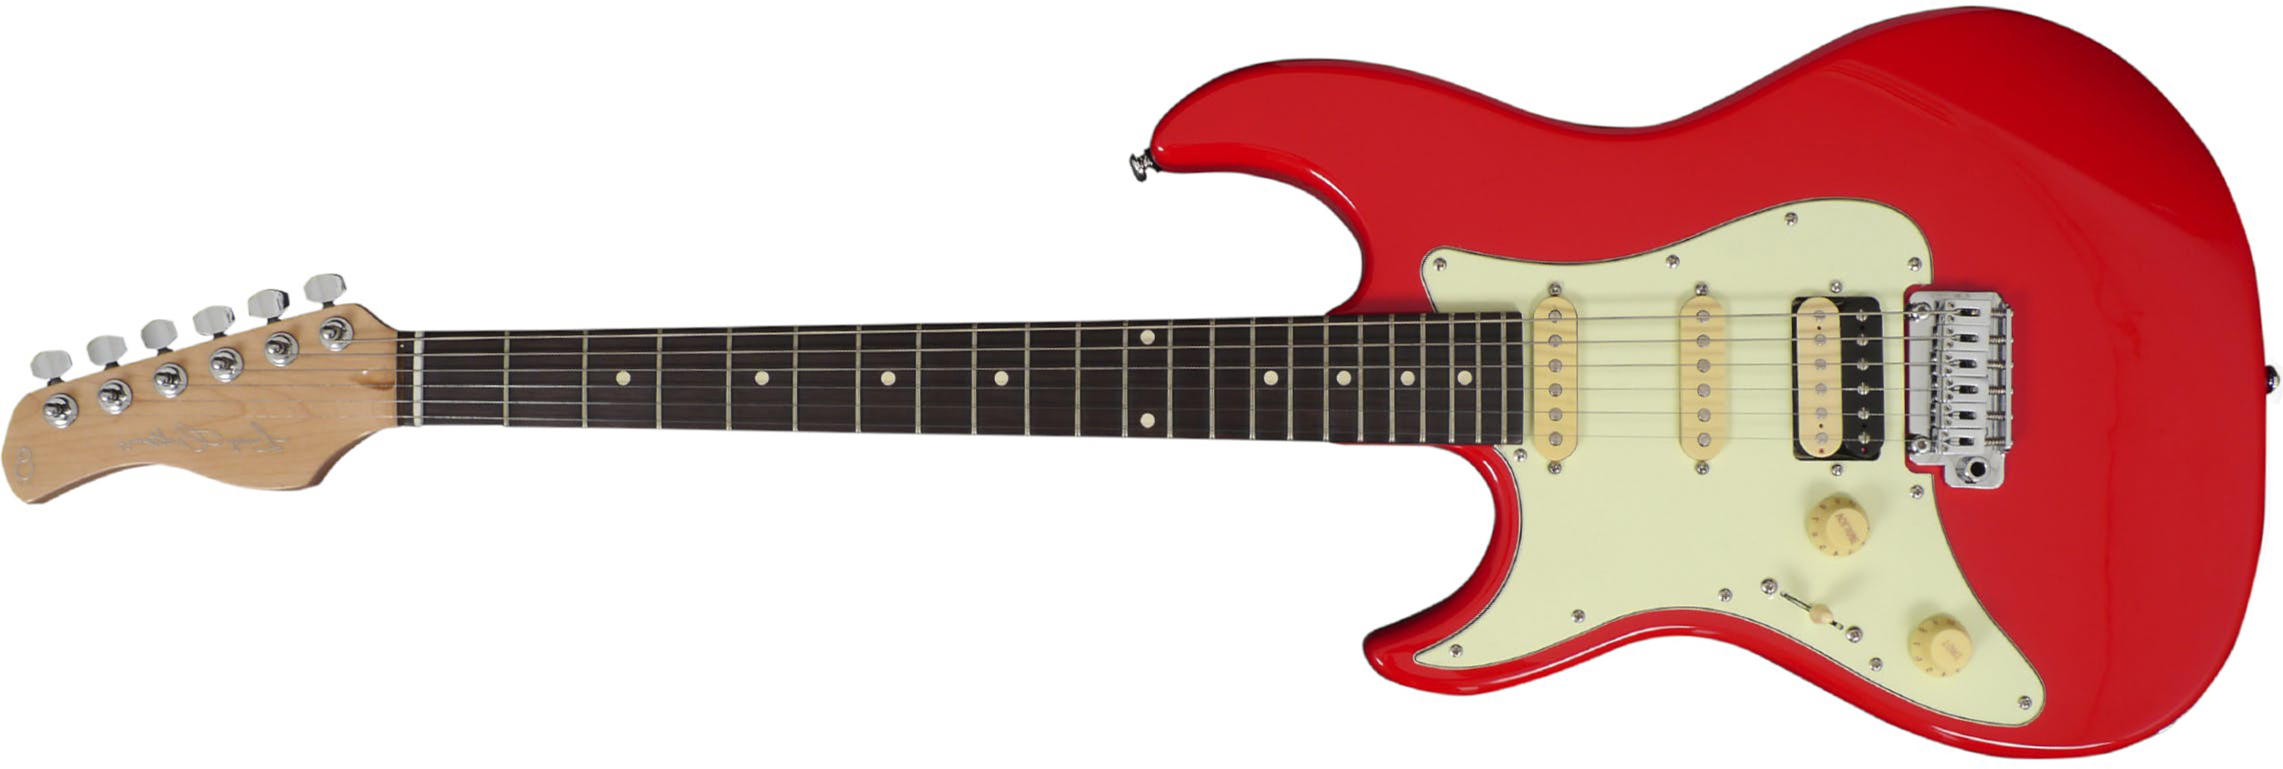 Sire Larry Carlton S3 Lh Signature Gaucher Hss Trem Rw - Dakota Red - E-Gitarre für Linkshänder - Main picture